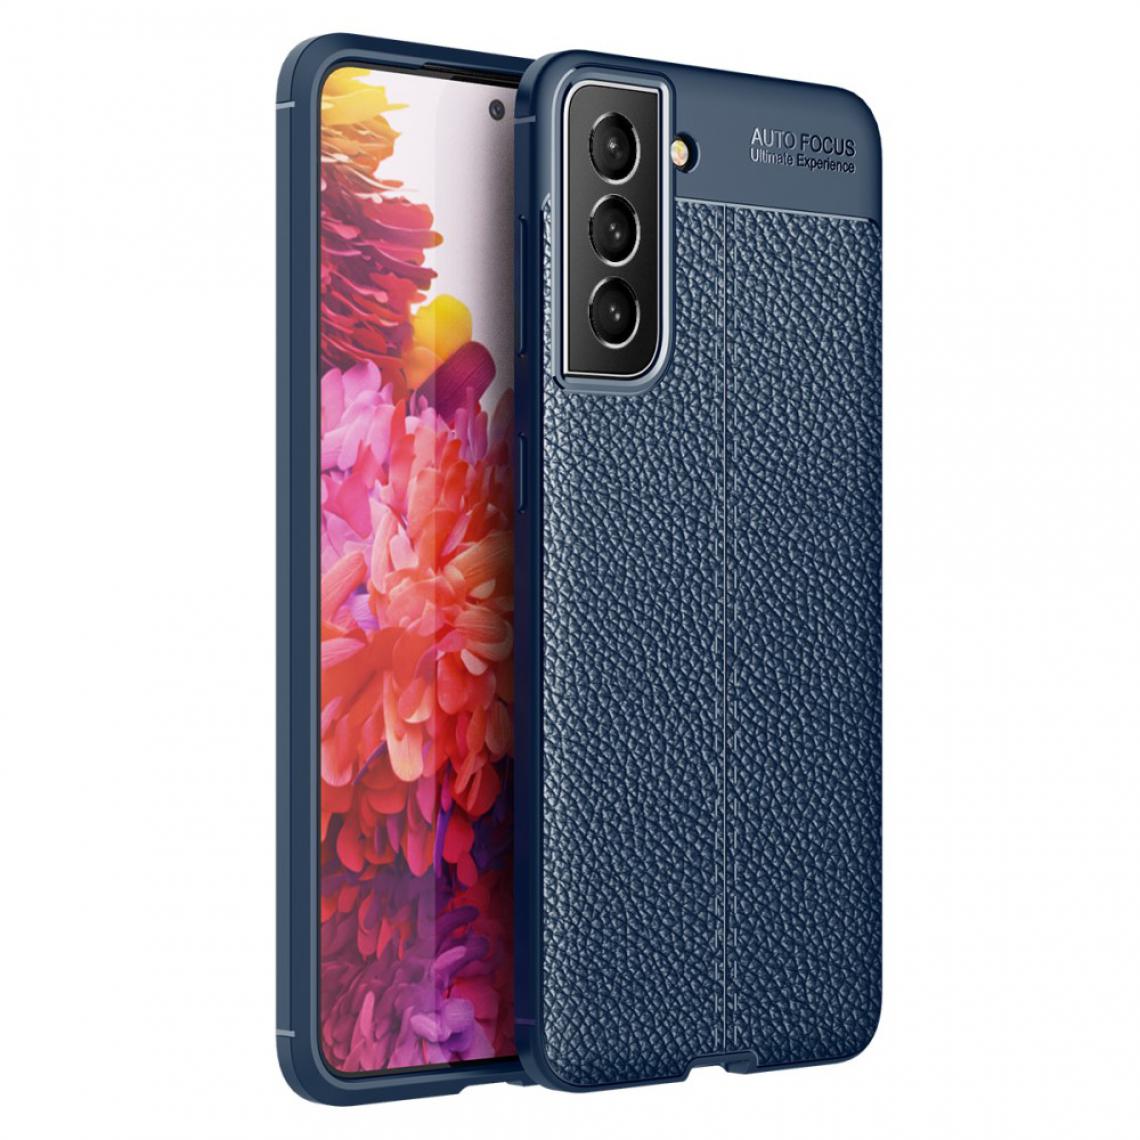 Other - Coque en TPU Texture souple de litchi bleu pour votre Samsung Galaxy S21 FE - Coque, étui smartphone